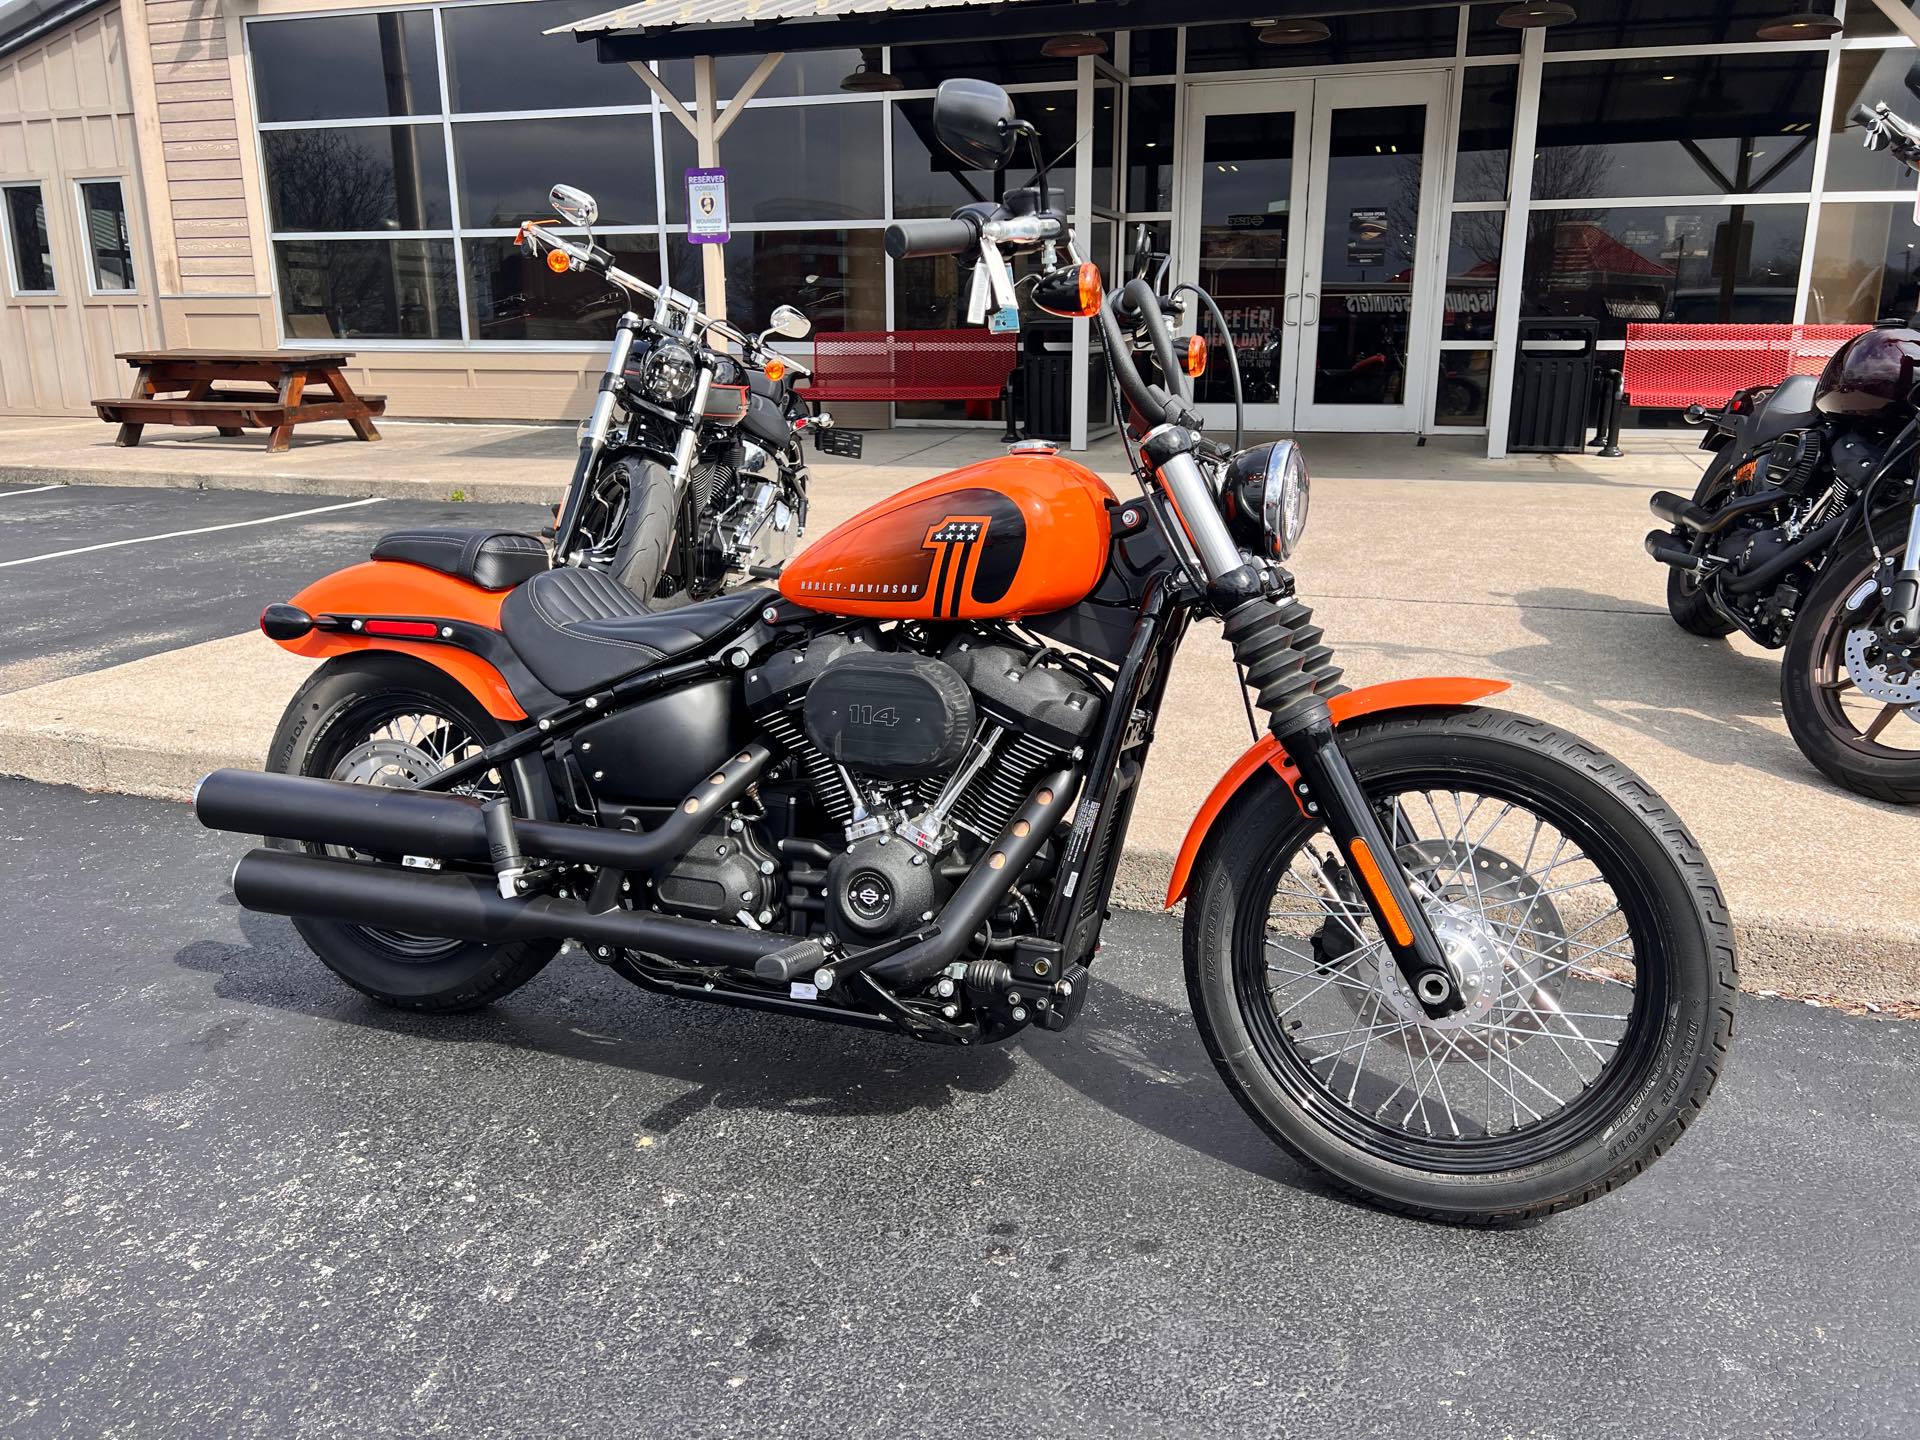 2021 Harley-Davidson Cruiser Street Bob 114 at Man O'War Harley-Davidson®